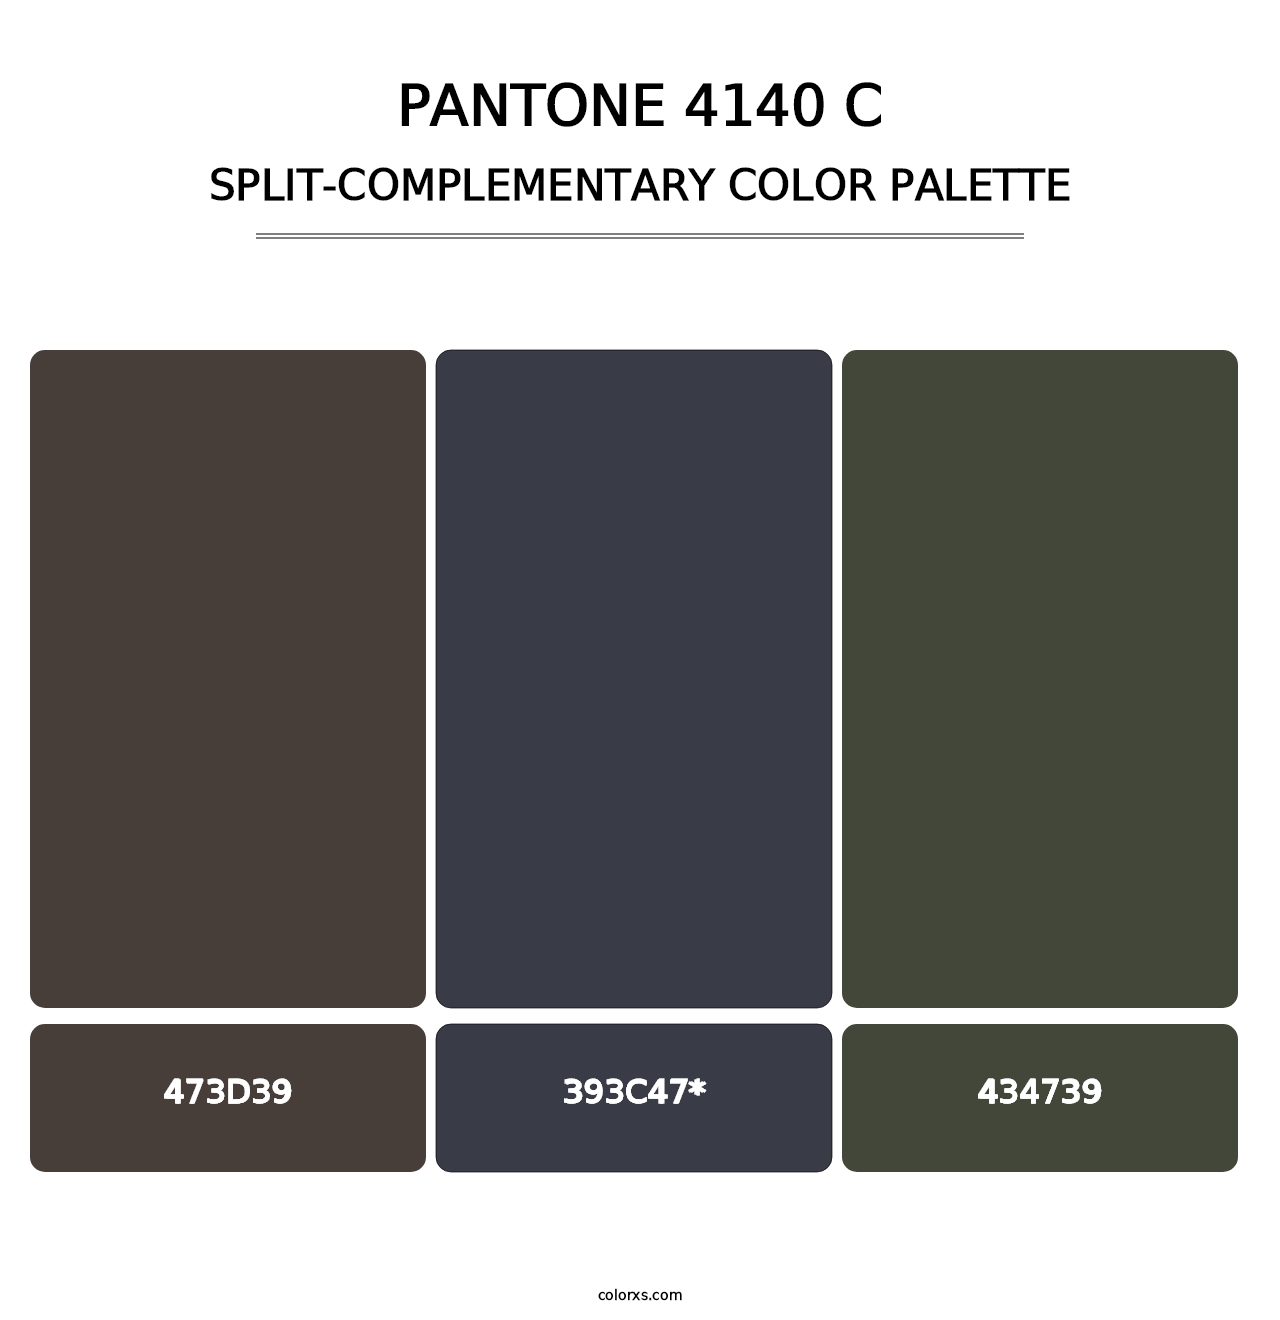 PANTONE 4140 C - Split-Complementary Color Palette